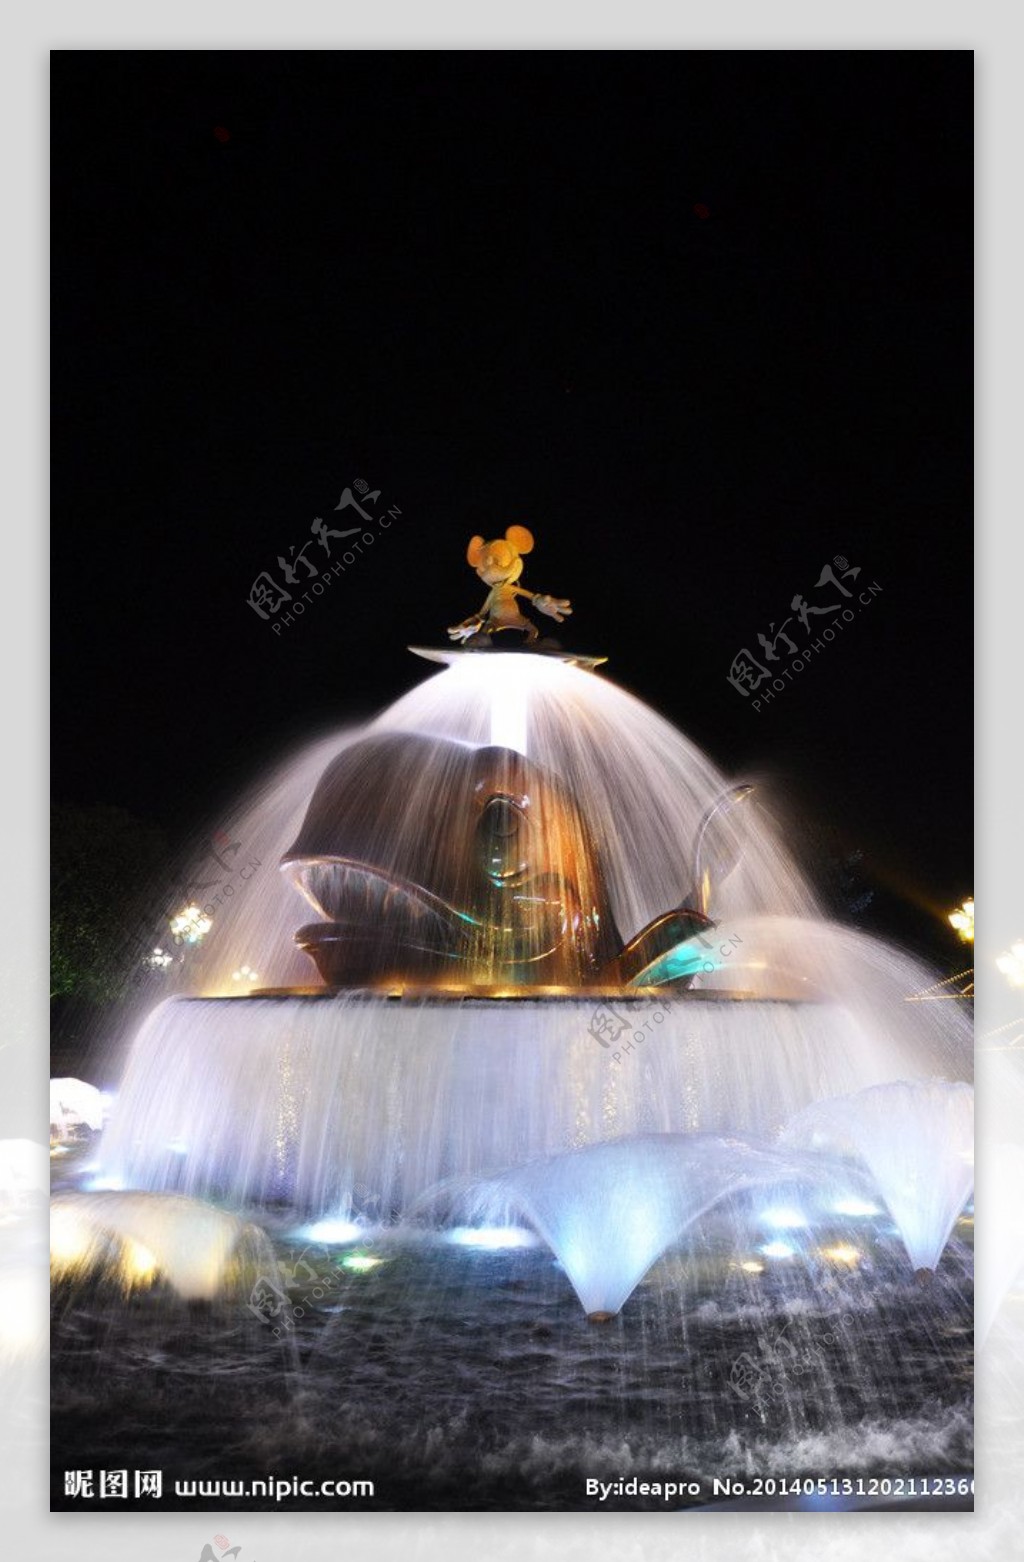 迪士尼乐园喷泉图片